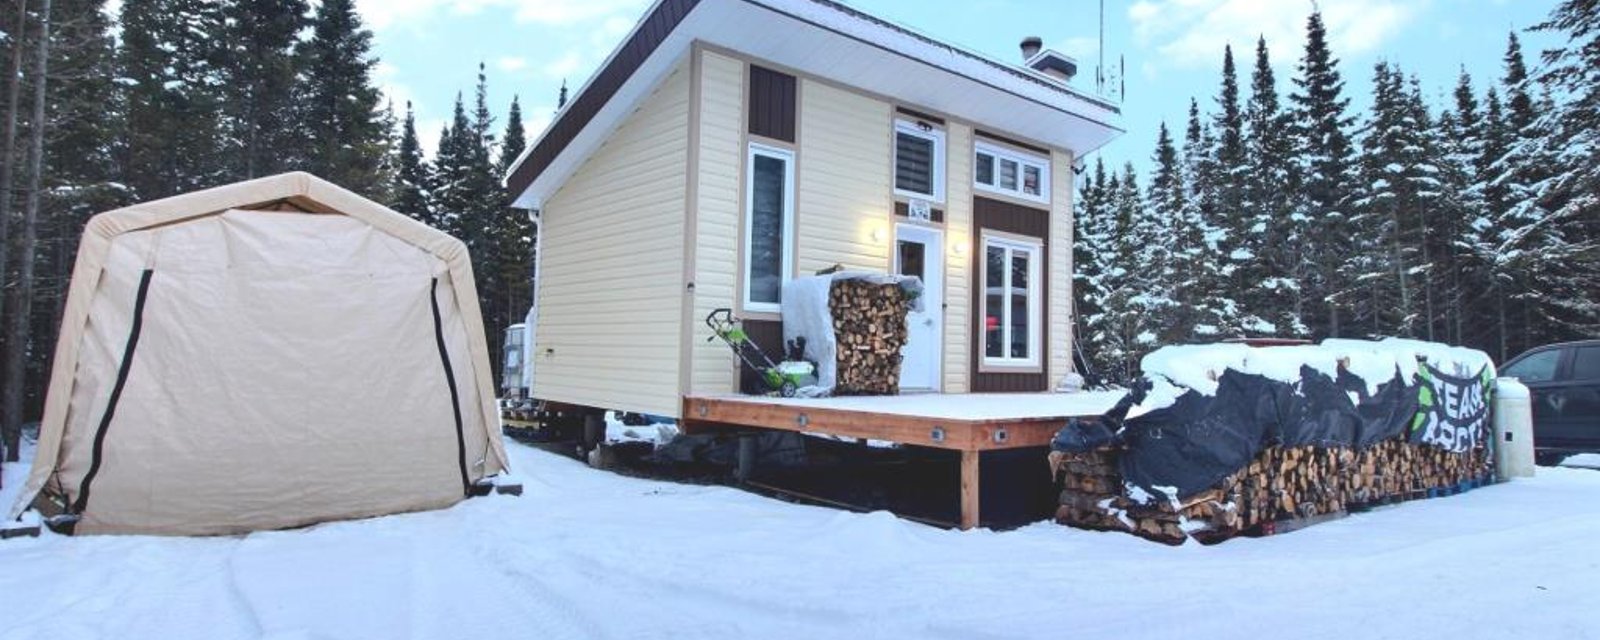 Mini maison meublée à 179 500 $ dans un domaine boisé de près de 21 acres